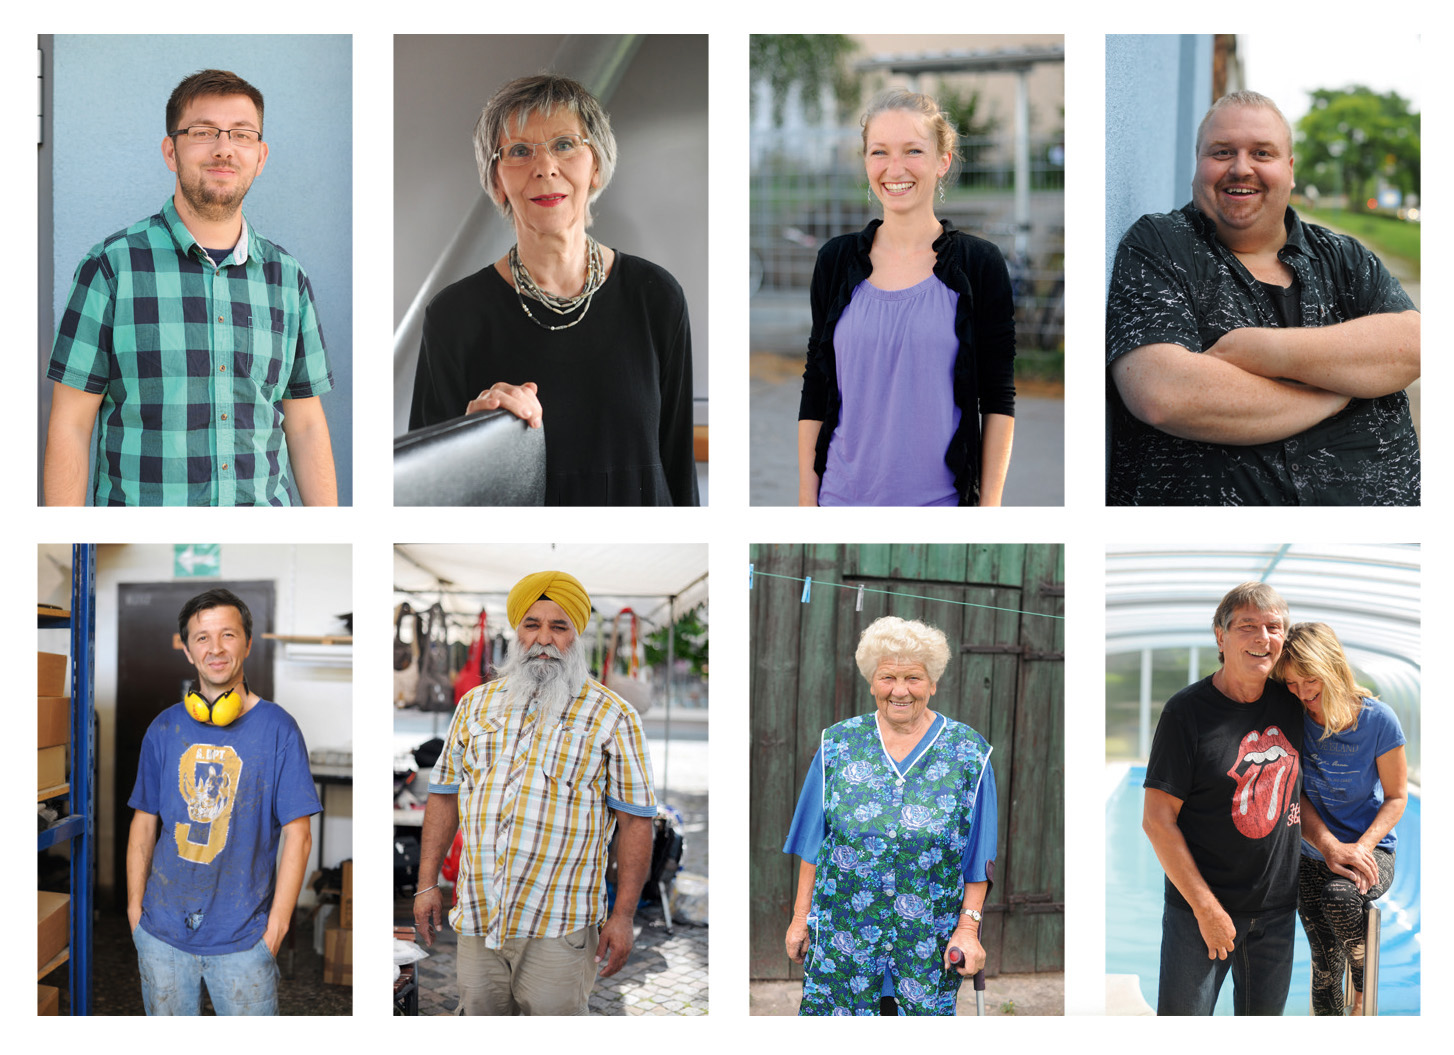 Porträts verschiedener Menschen, Fotos aus der Kampagne der Heinrich-Böll-Stiftung Brandenburg; Fotografie Barbara Dietl